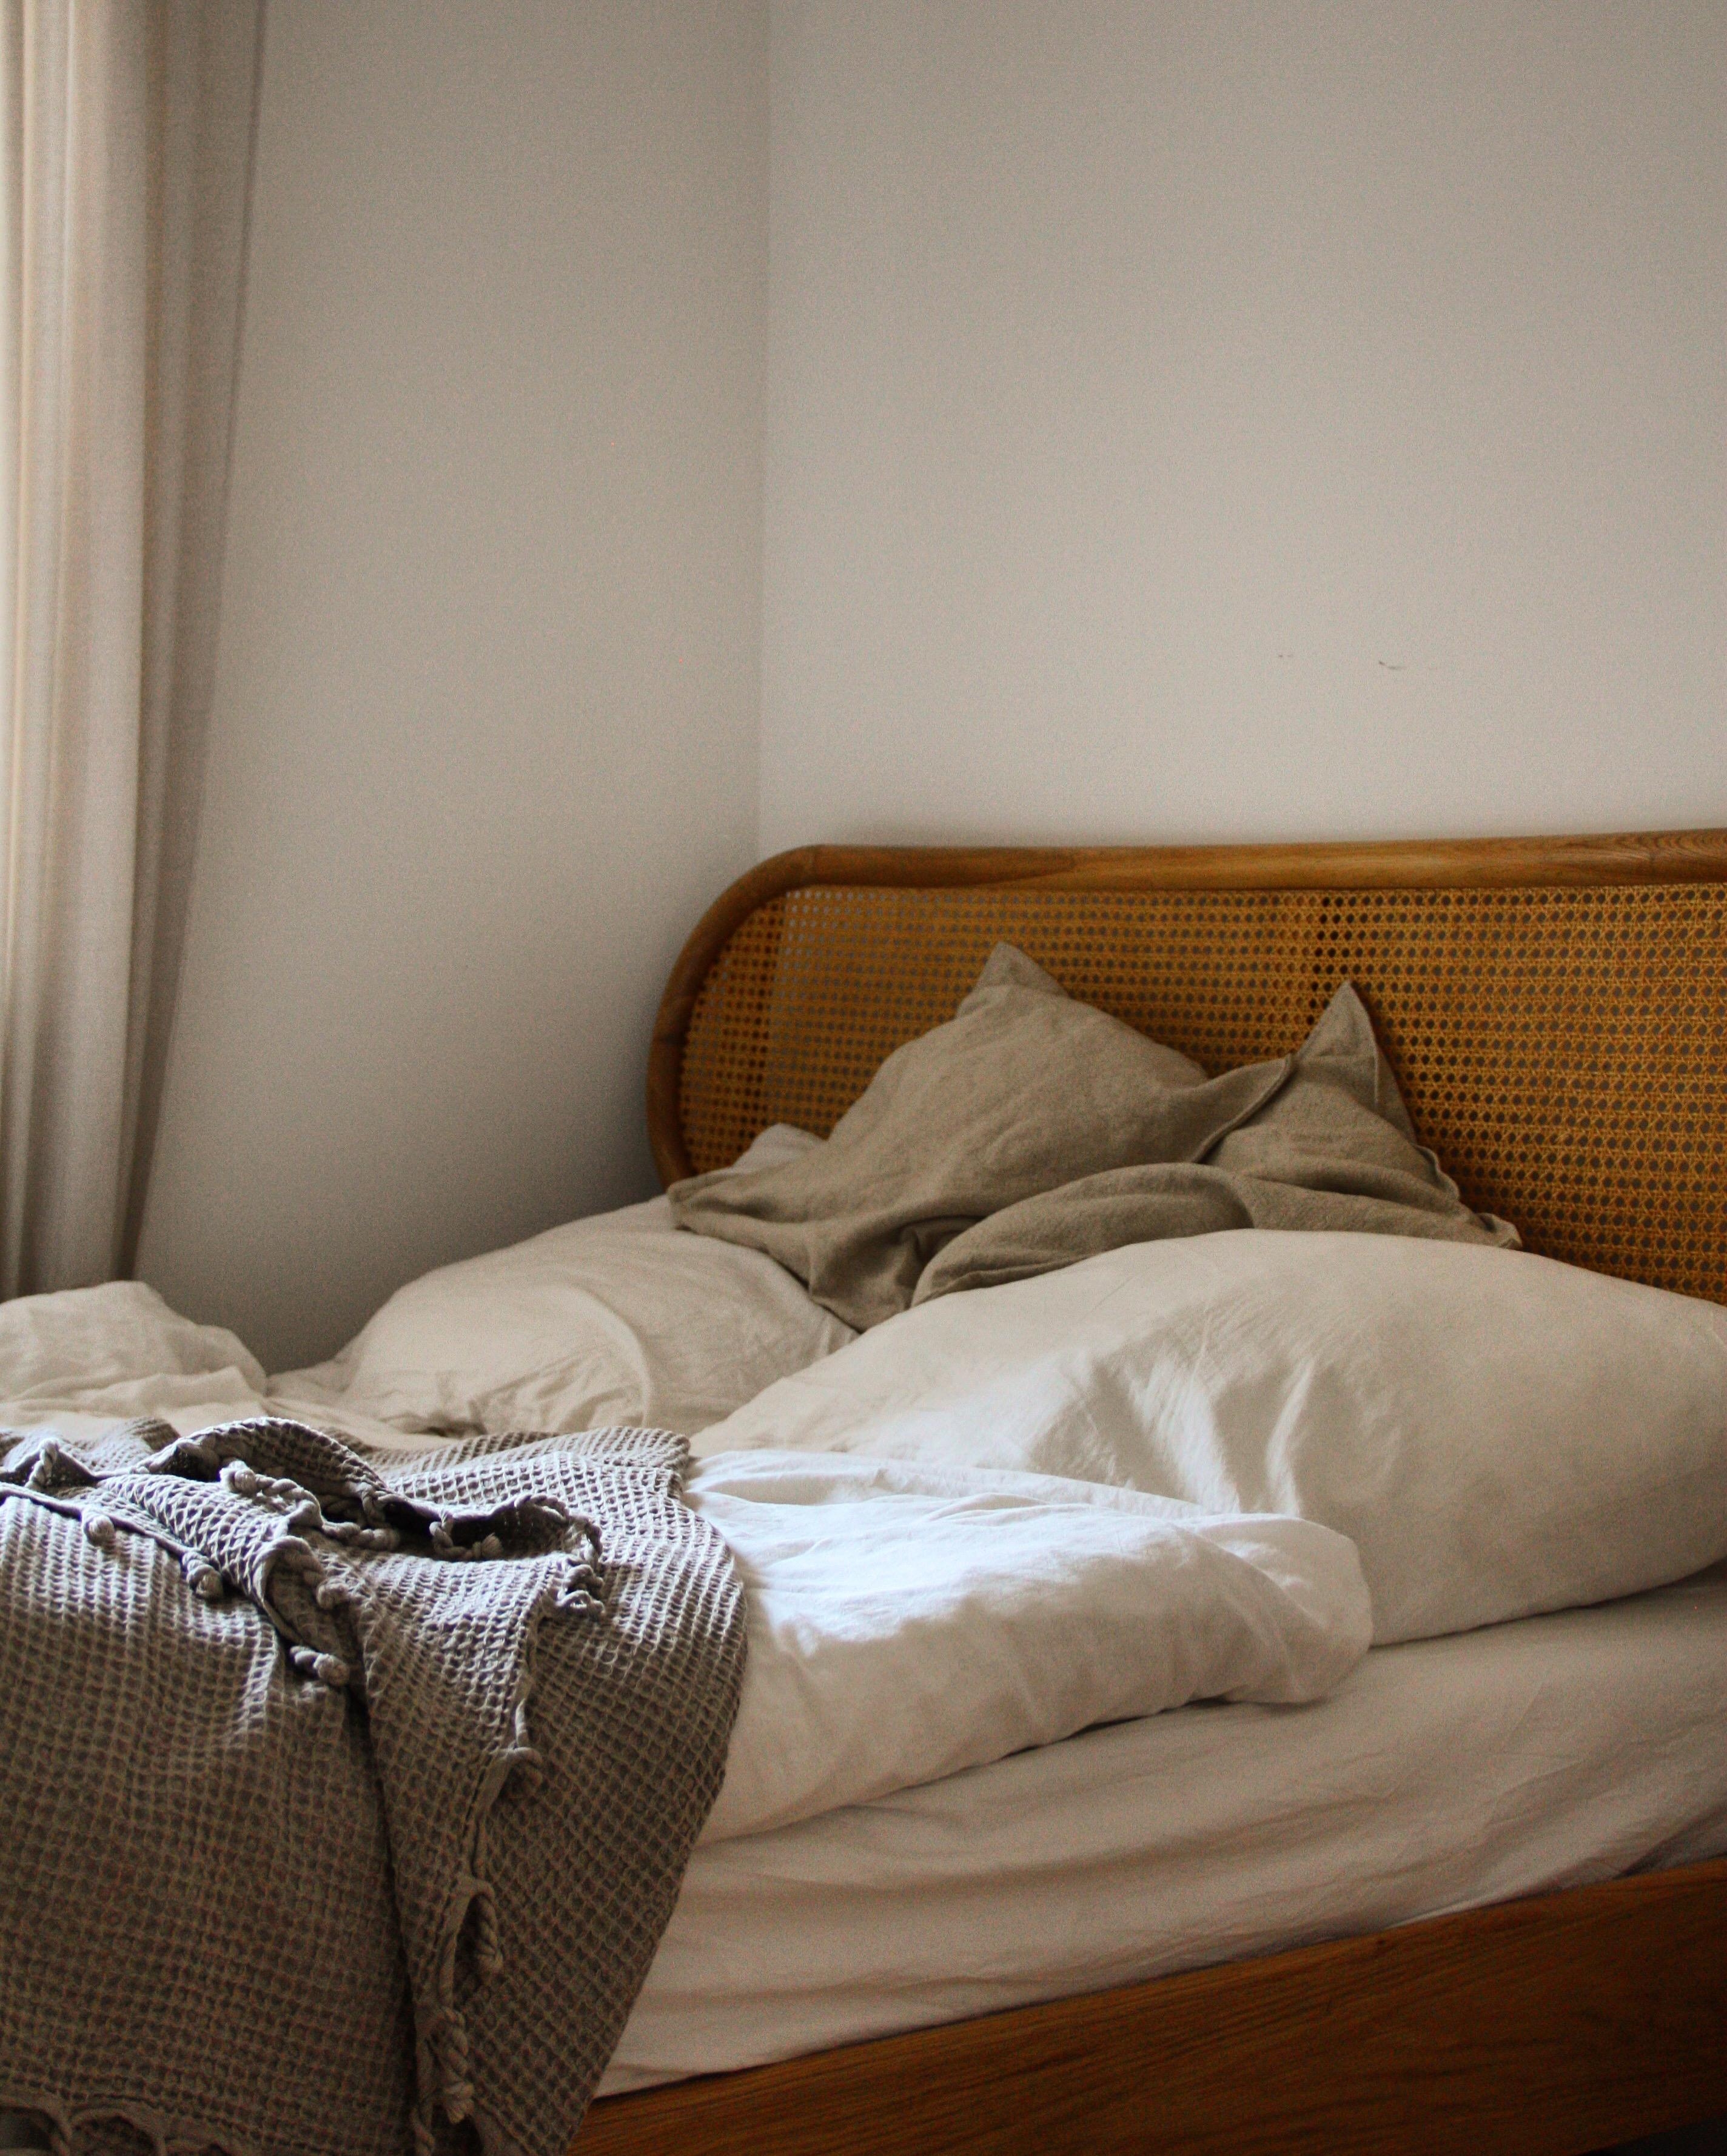 #bed #whiteliving #nordisch #cozyhome #skandinavischwohnen #hyggeliving #bdrm #schlafzimmer